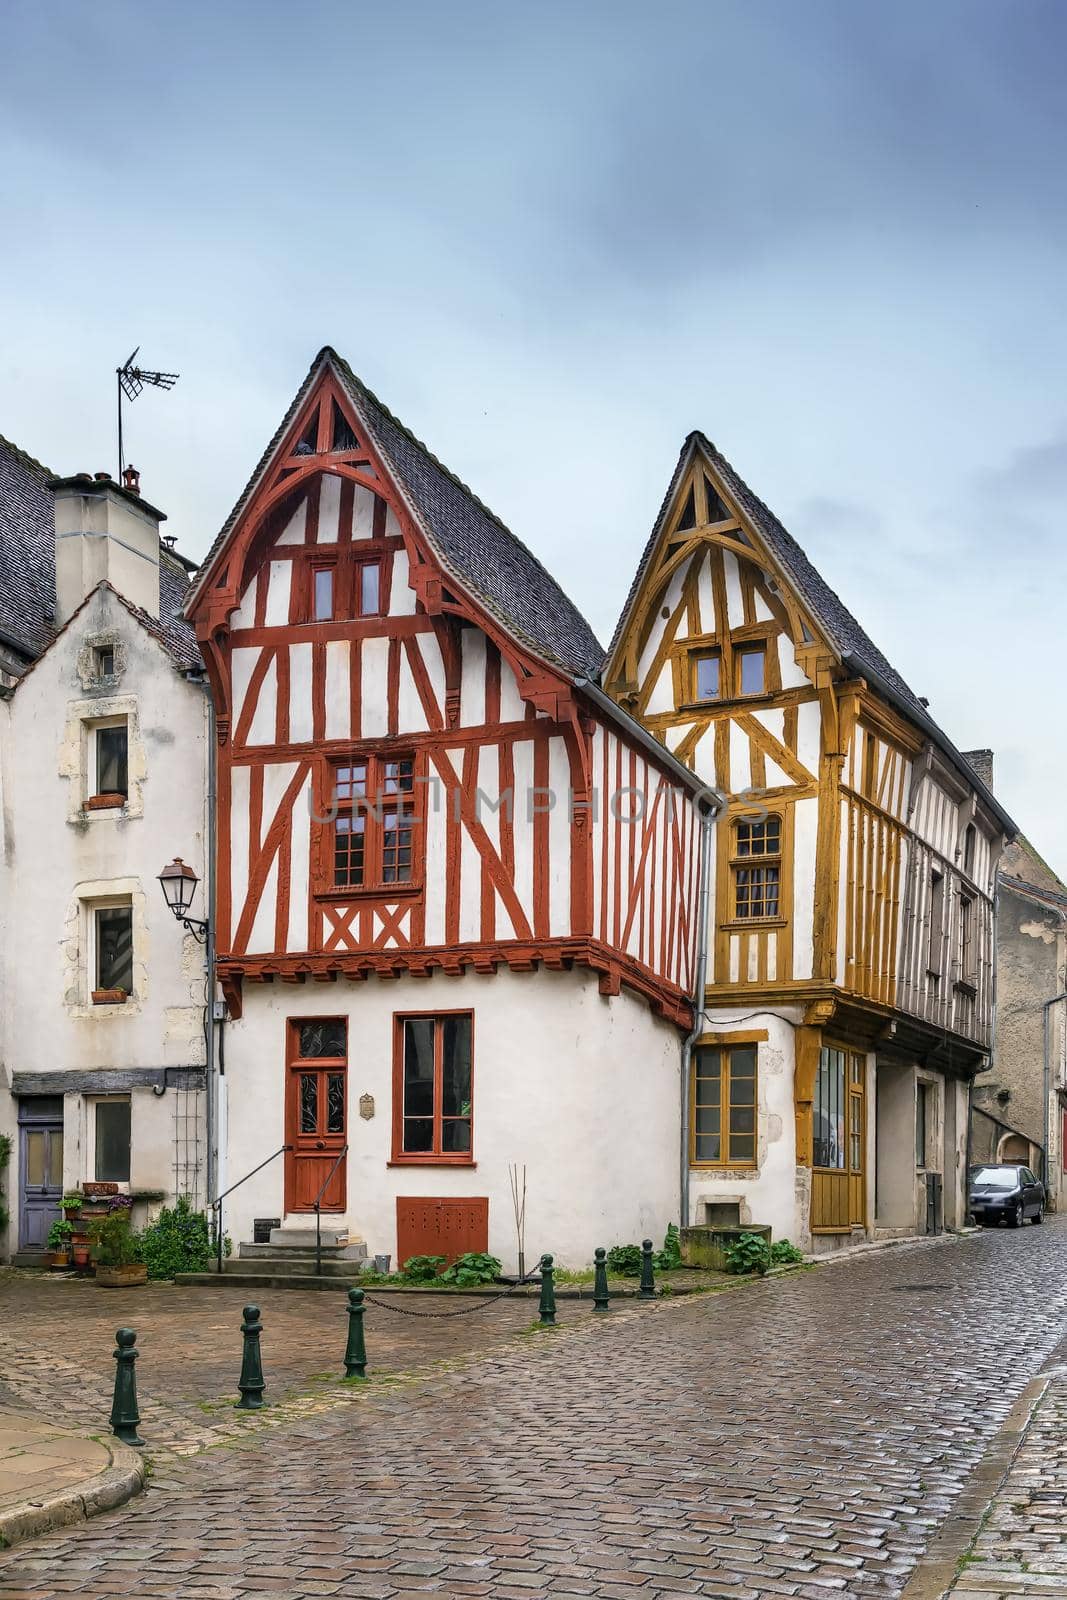 Street in Noyers, Yonne, France by borisb17